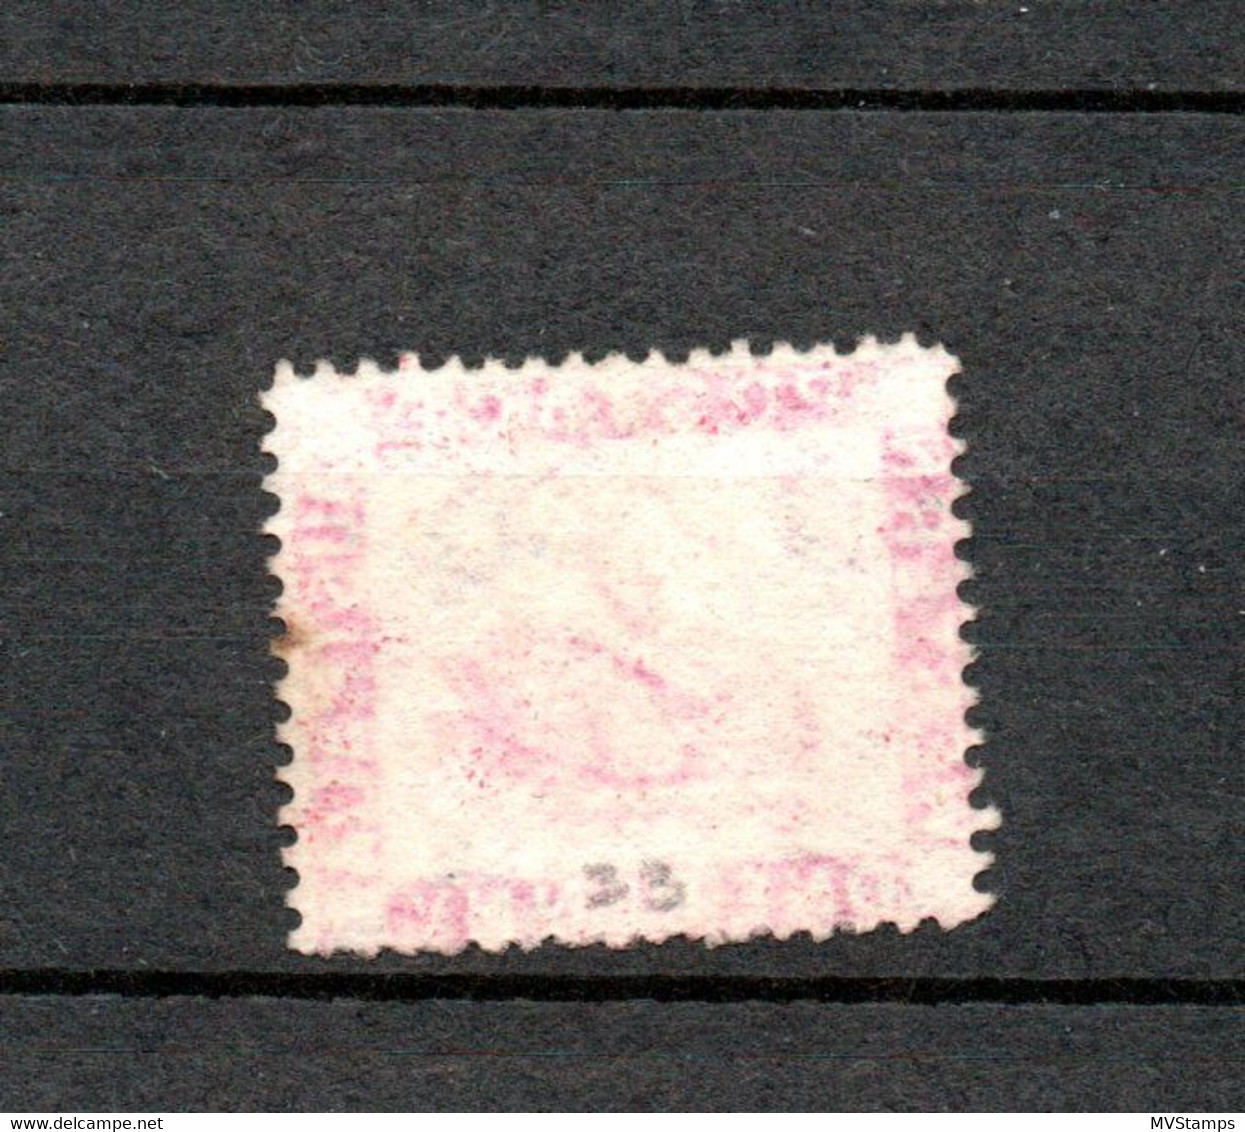 Western Australia 1861 Old Def.Swan Stamp (Michel 9) Nice Used - Used Stamps